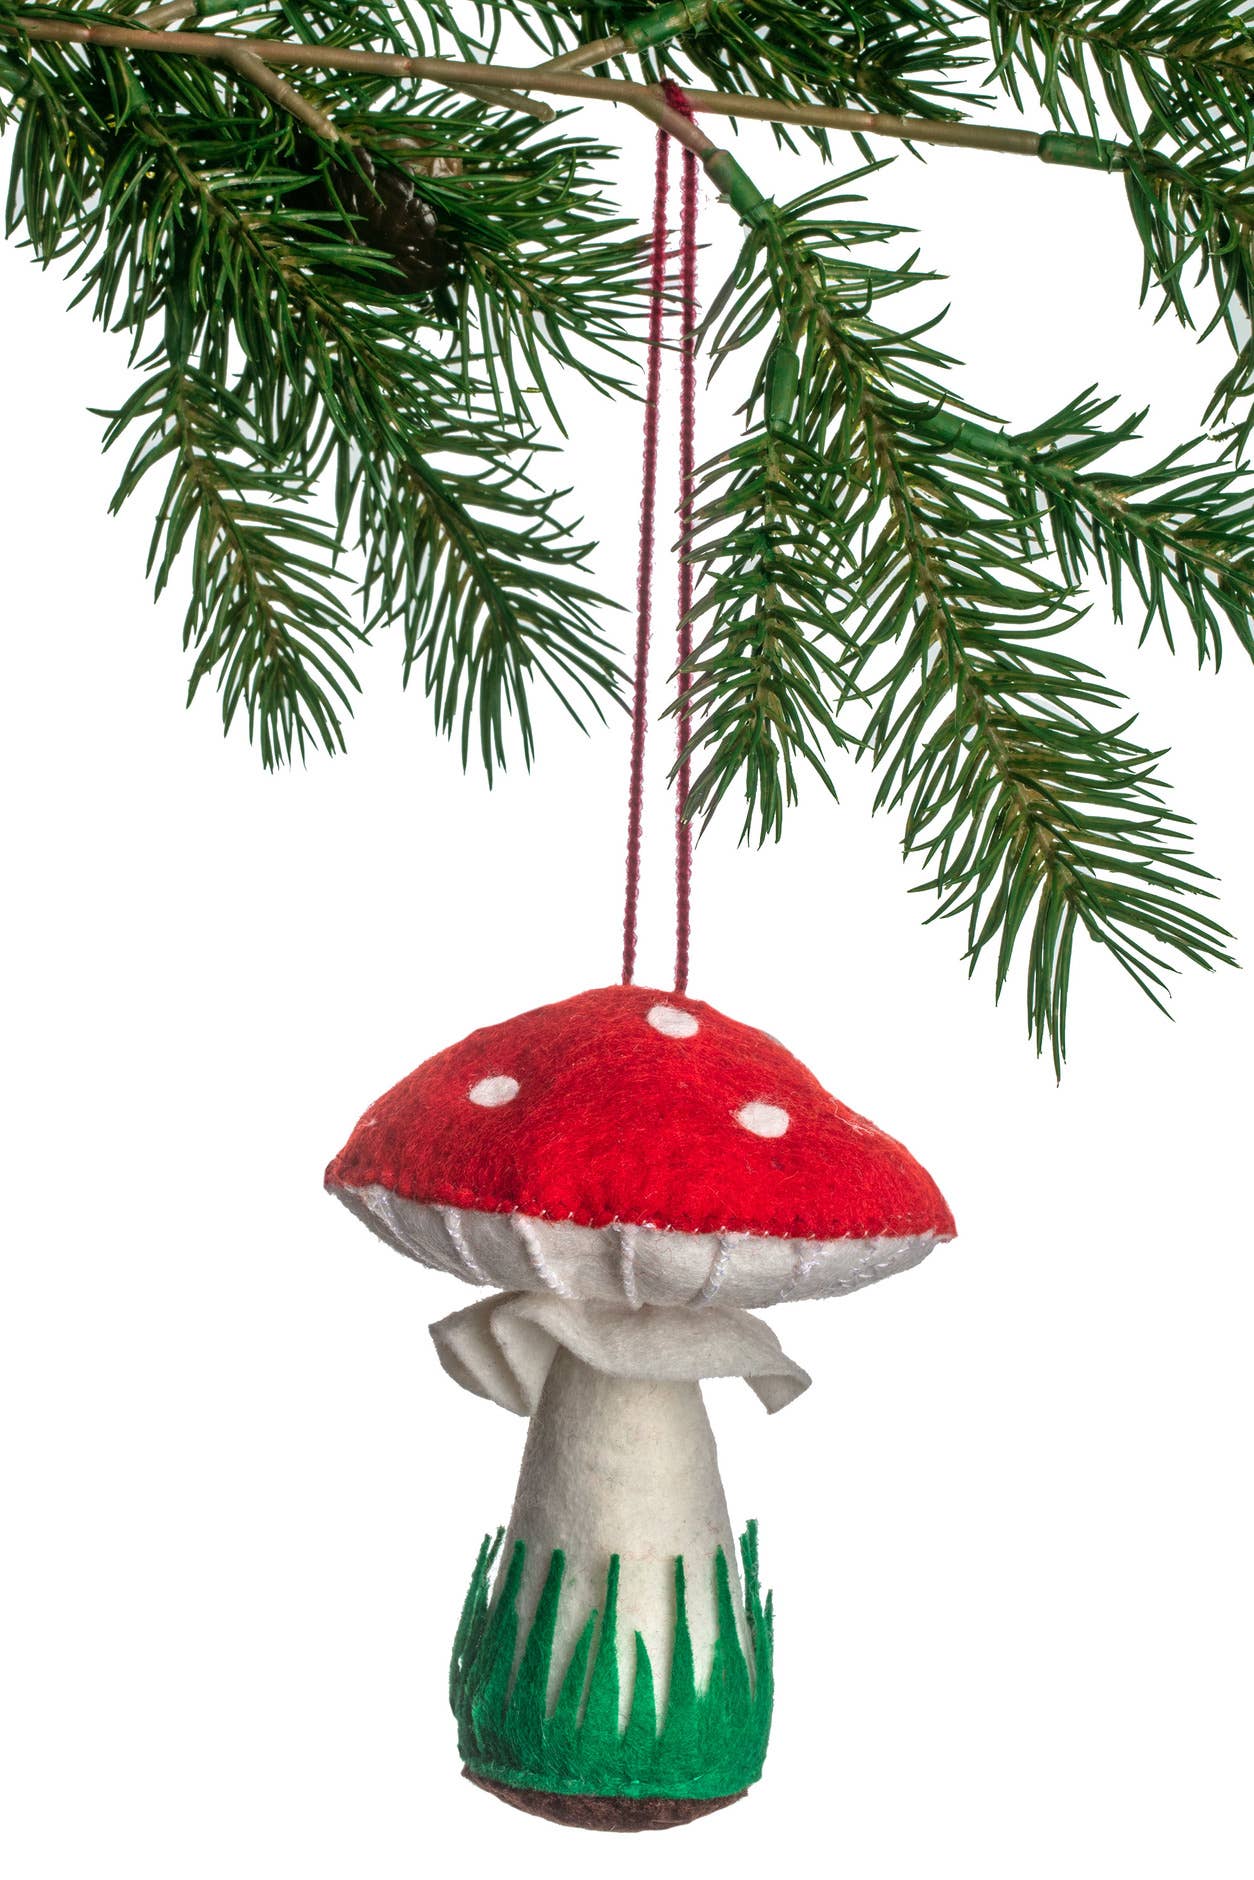 Silk Road Bazaar - Mushroom Ornament